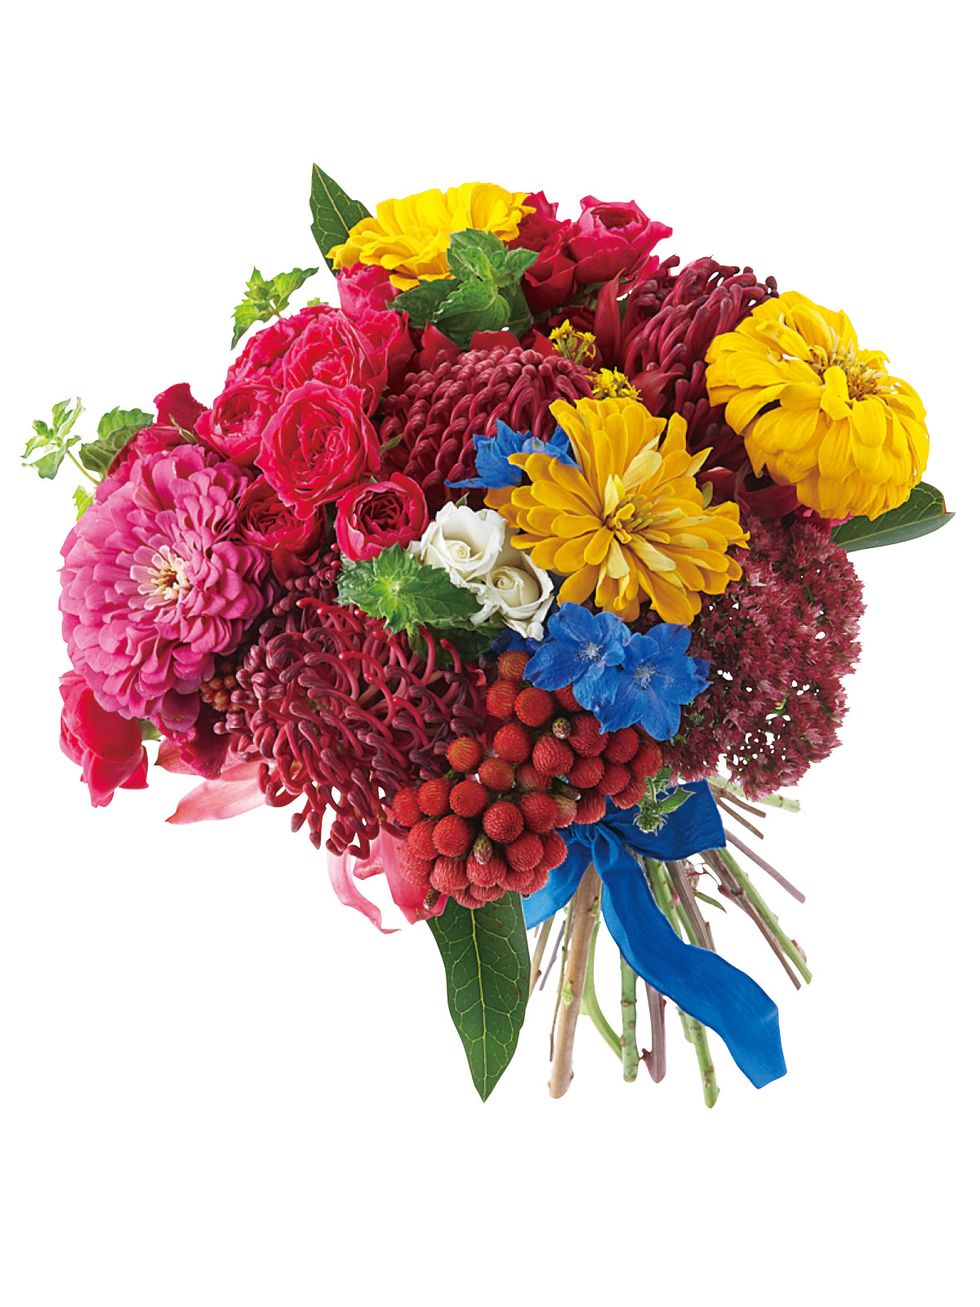 Flower, Bouquet, Cut flowers, Plant, Floristry, Flower Arranging, Flowering plant, Floral design, Chrysanths, Petal, 